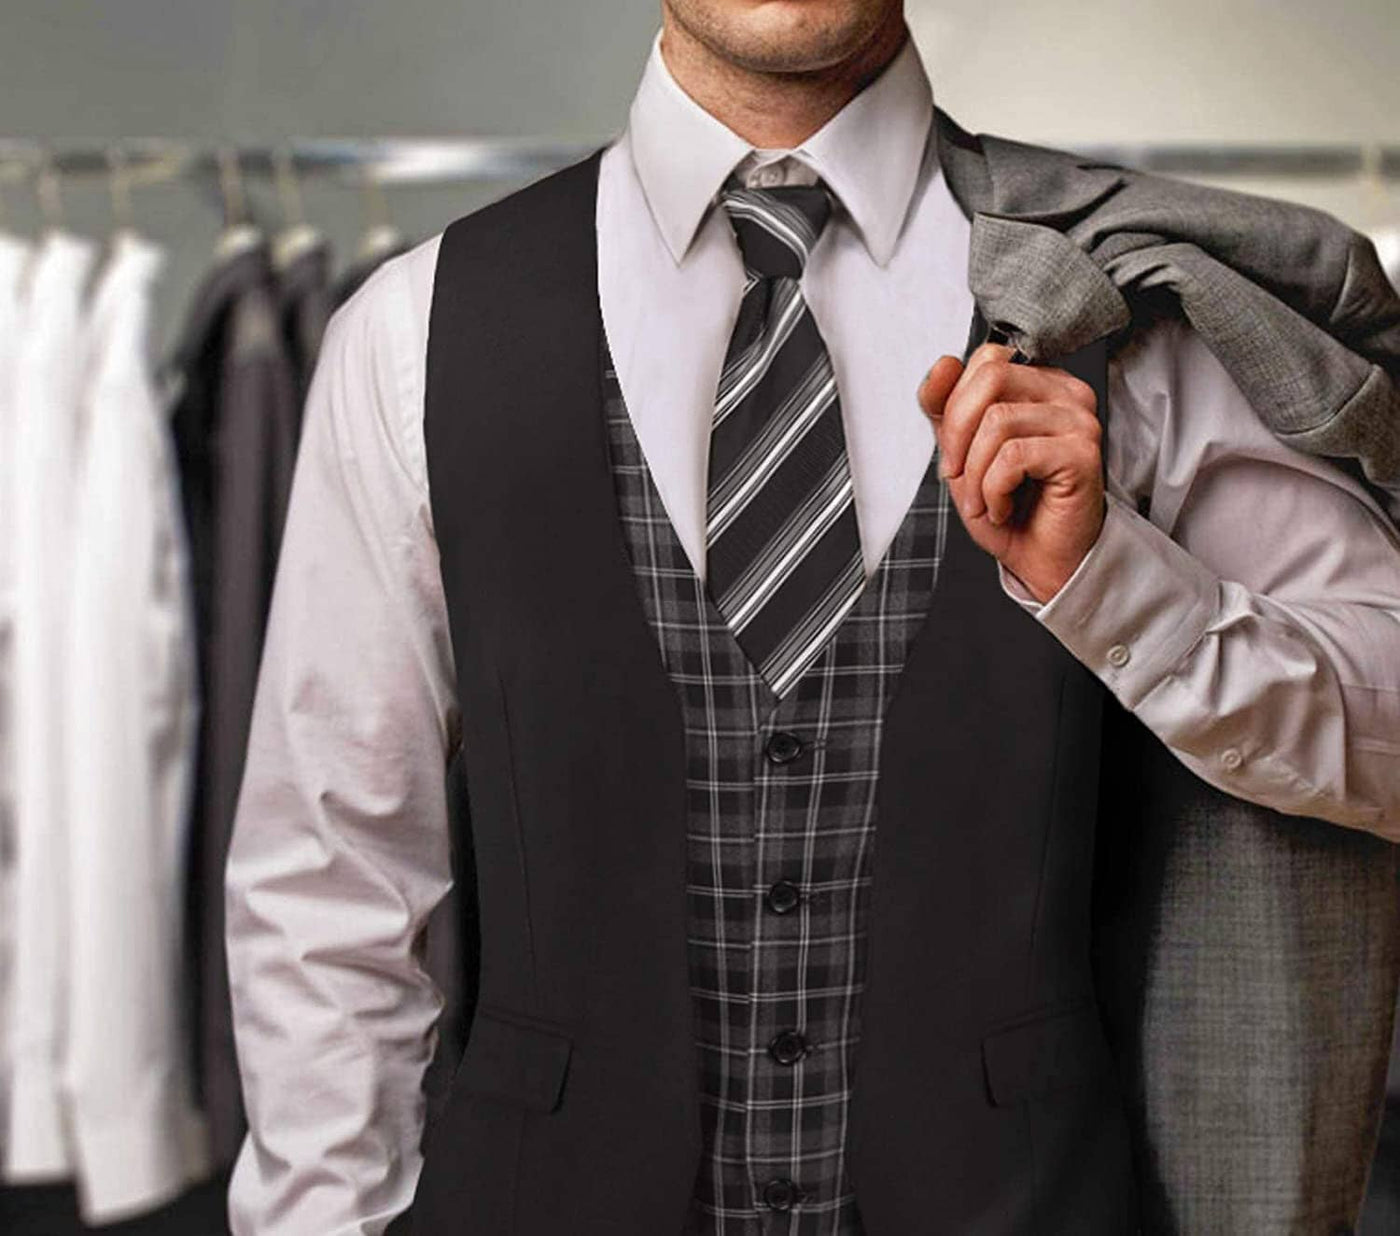 Coofandy Business Suit Vest (US Only) Vest coofandy 